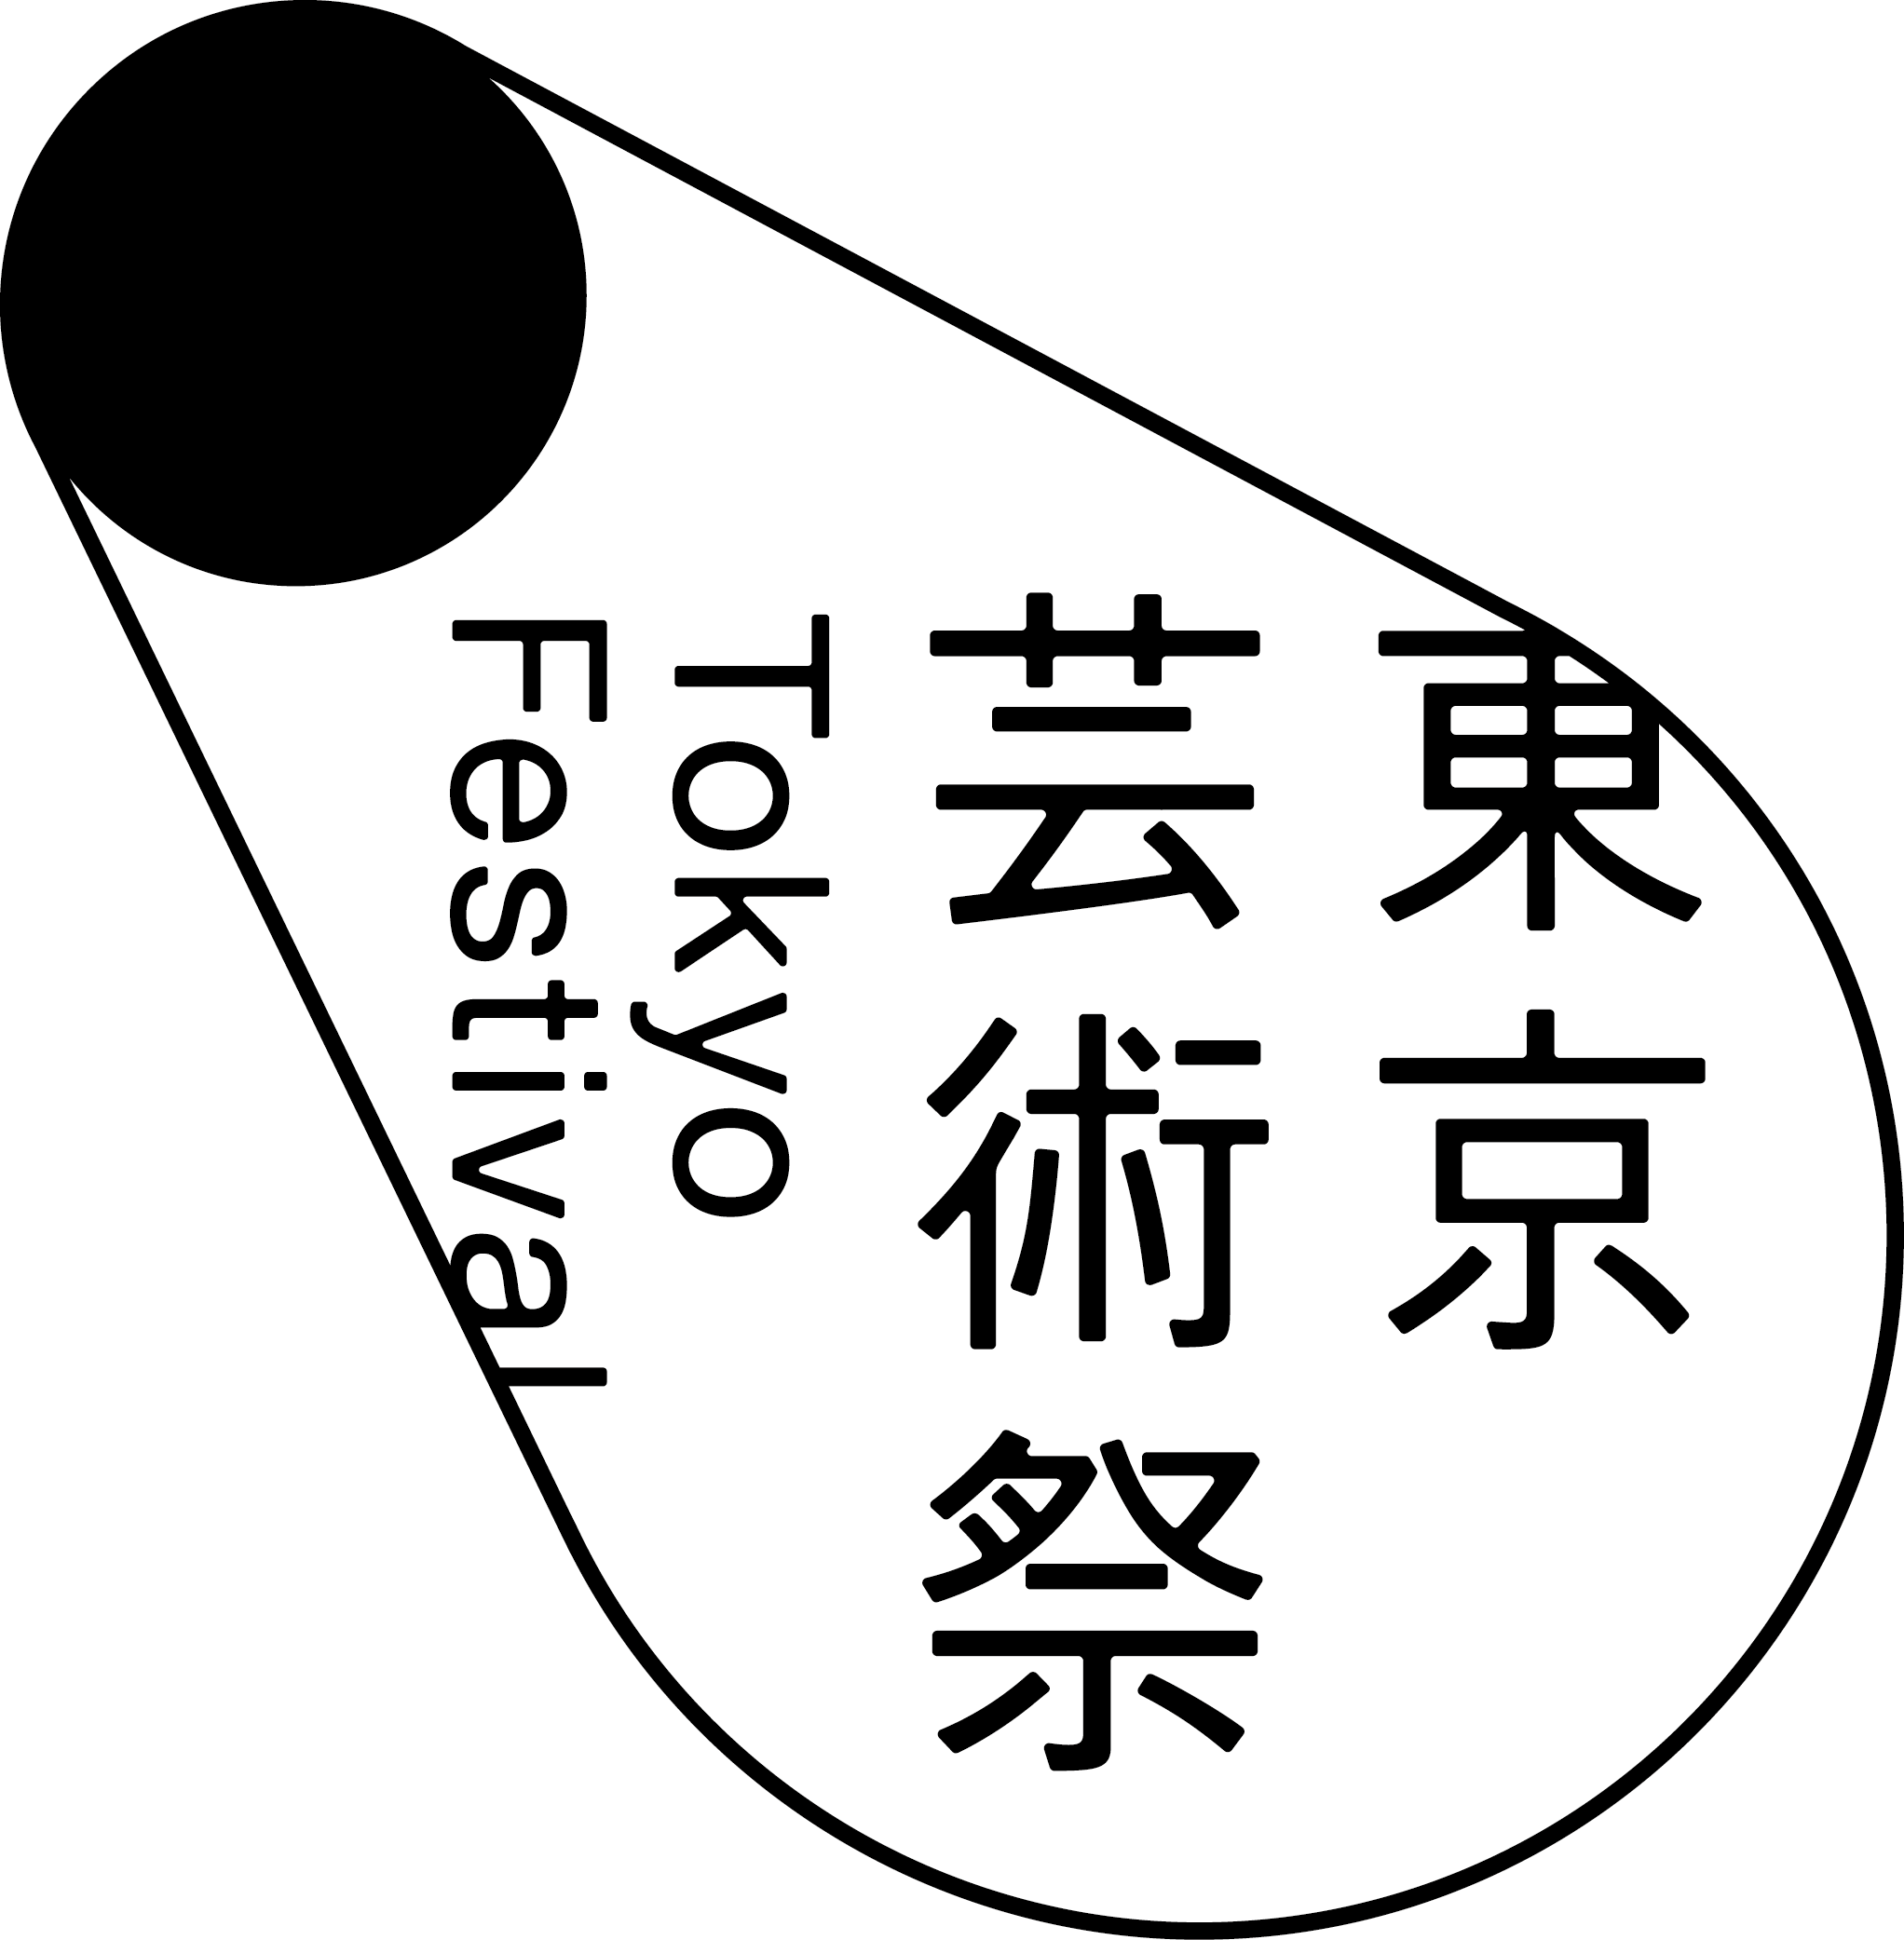 東京芸術祭ロゴ